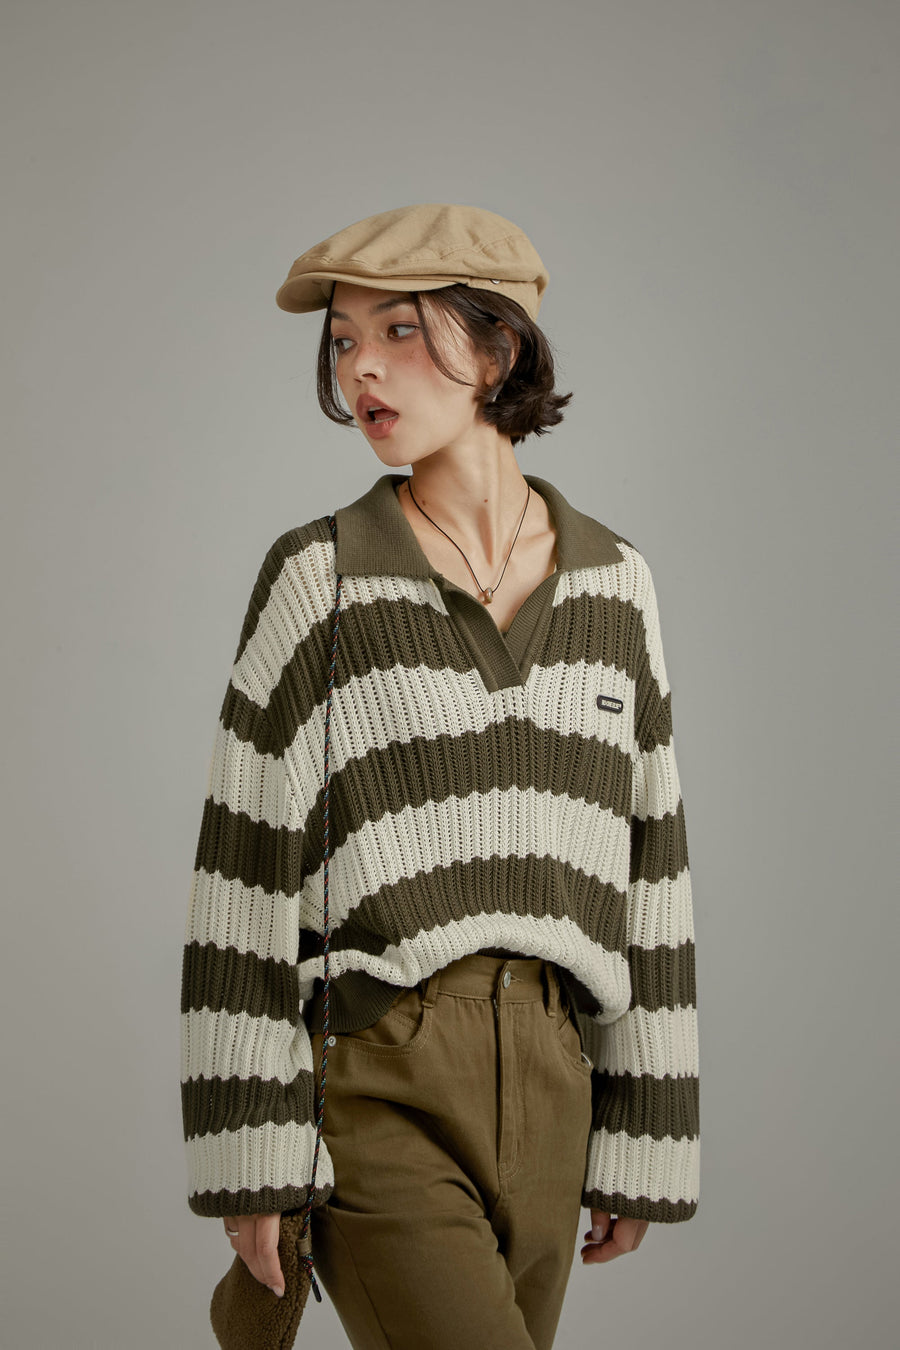 Stripe Open Collar Knit Sweater